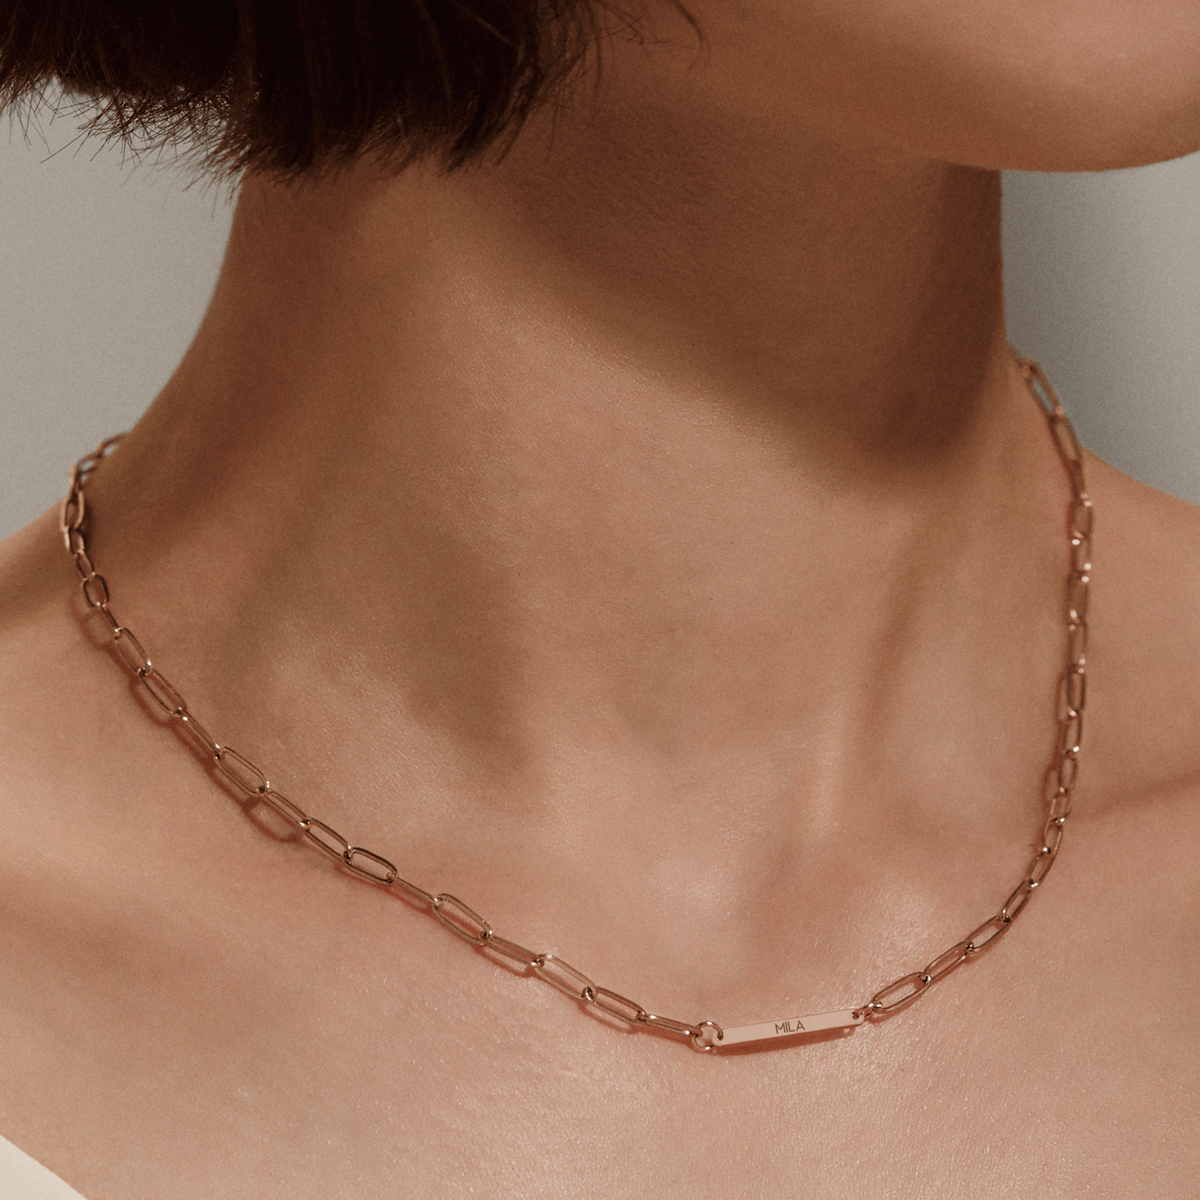 Customized Name Necklace - zuzumia